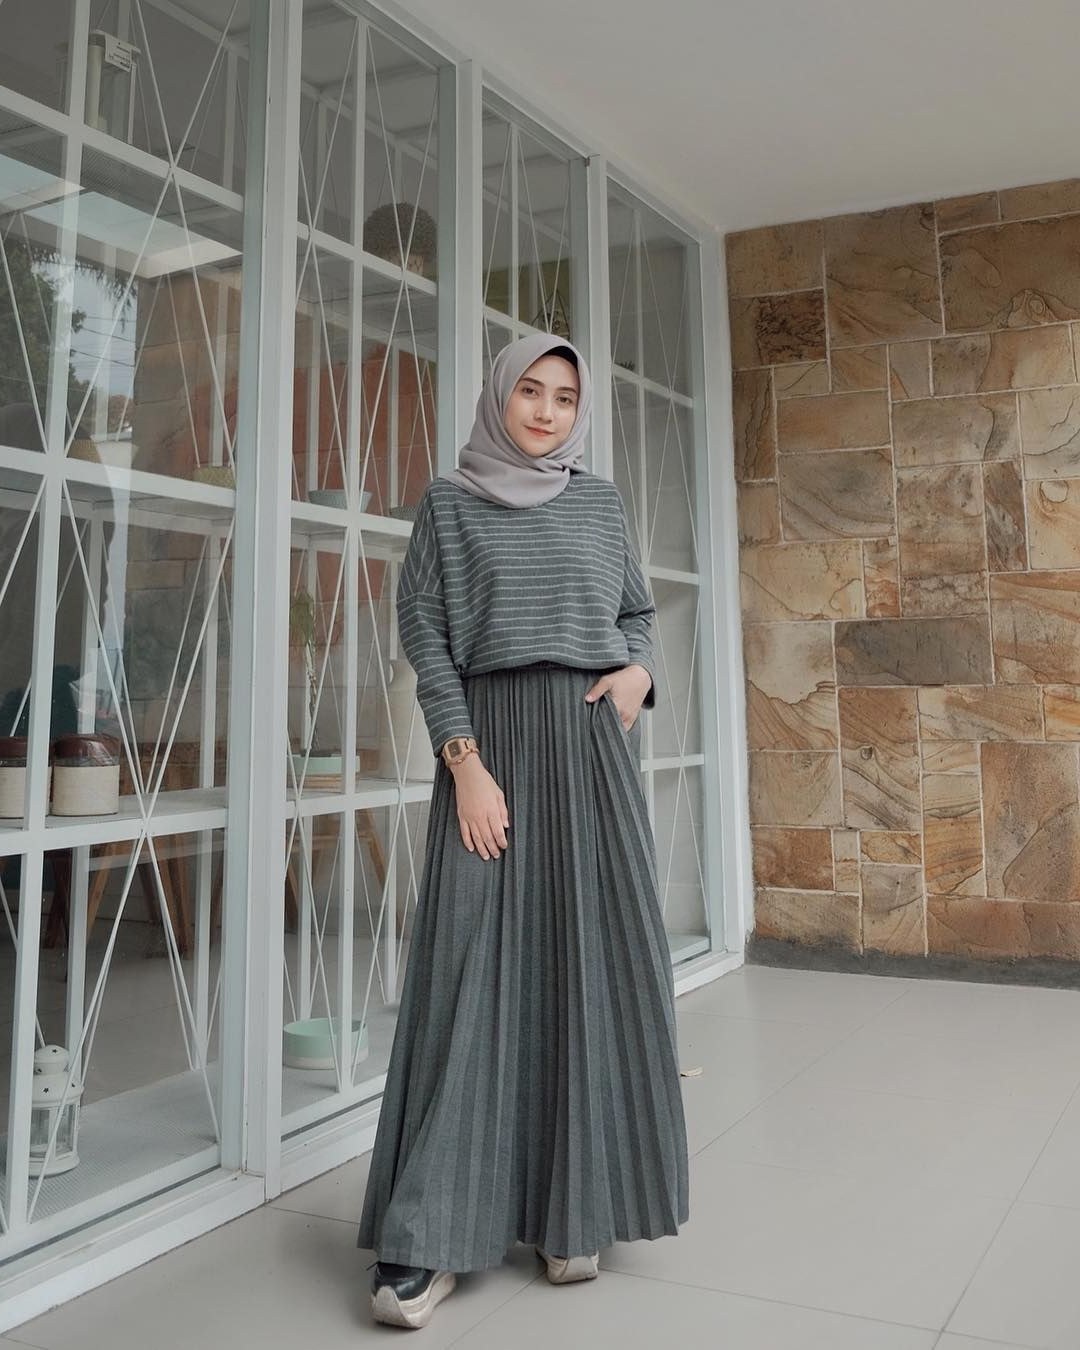 Model Gaya Baju Lebaran 2019 3id6 Baju Muslim Lebaran Terbaru 2019 Dengan Gambar